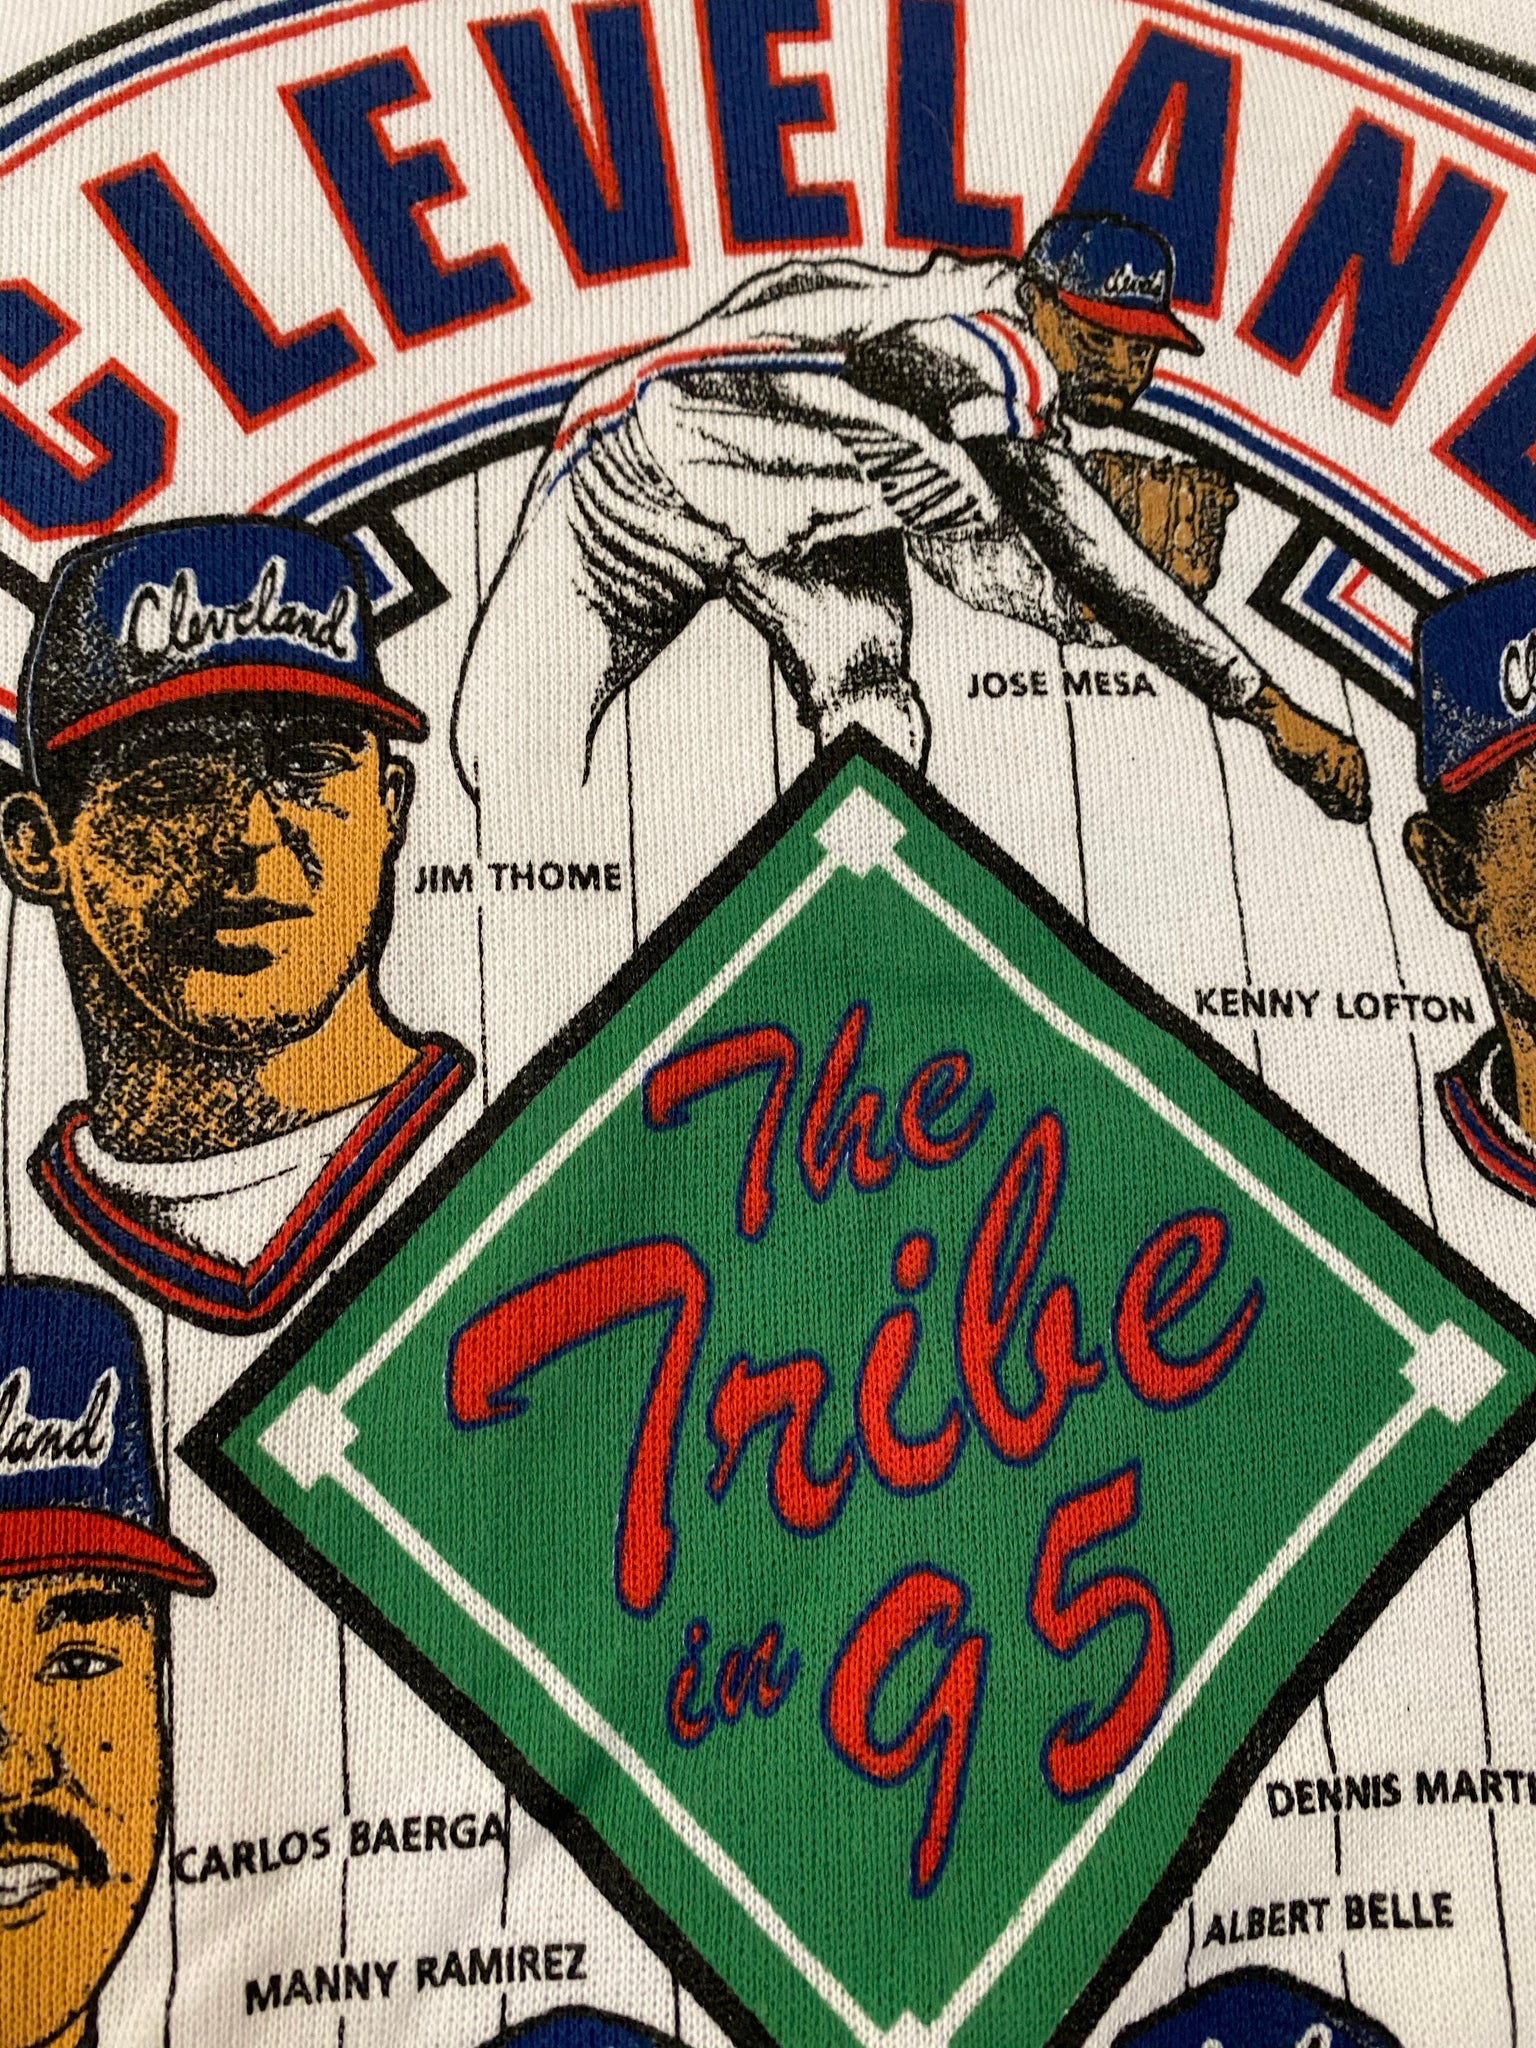 Vintage 1989 Cleveland Indians Shirt